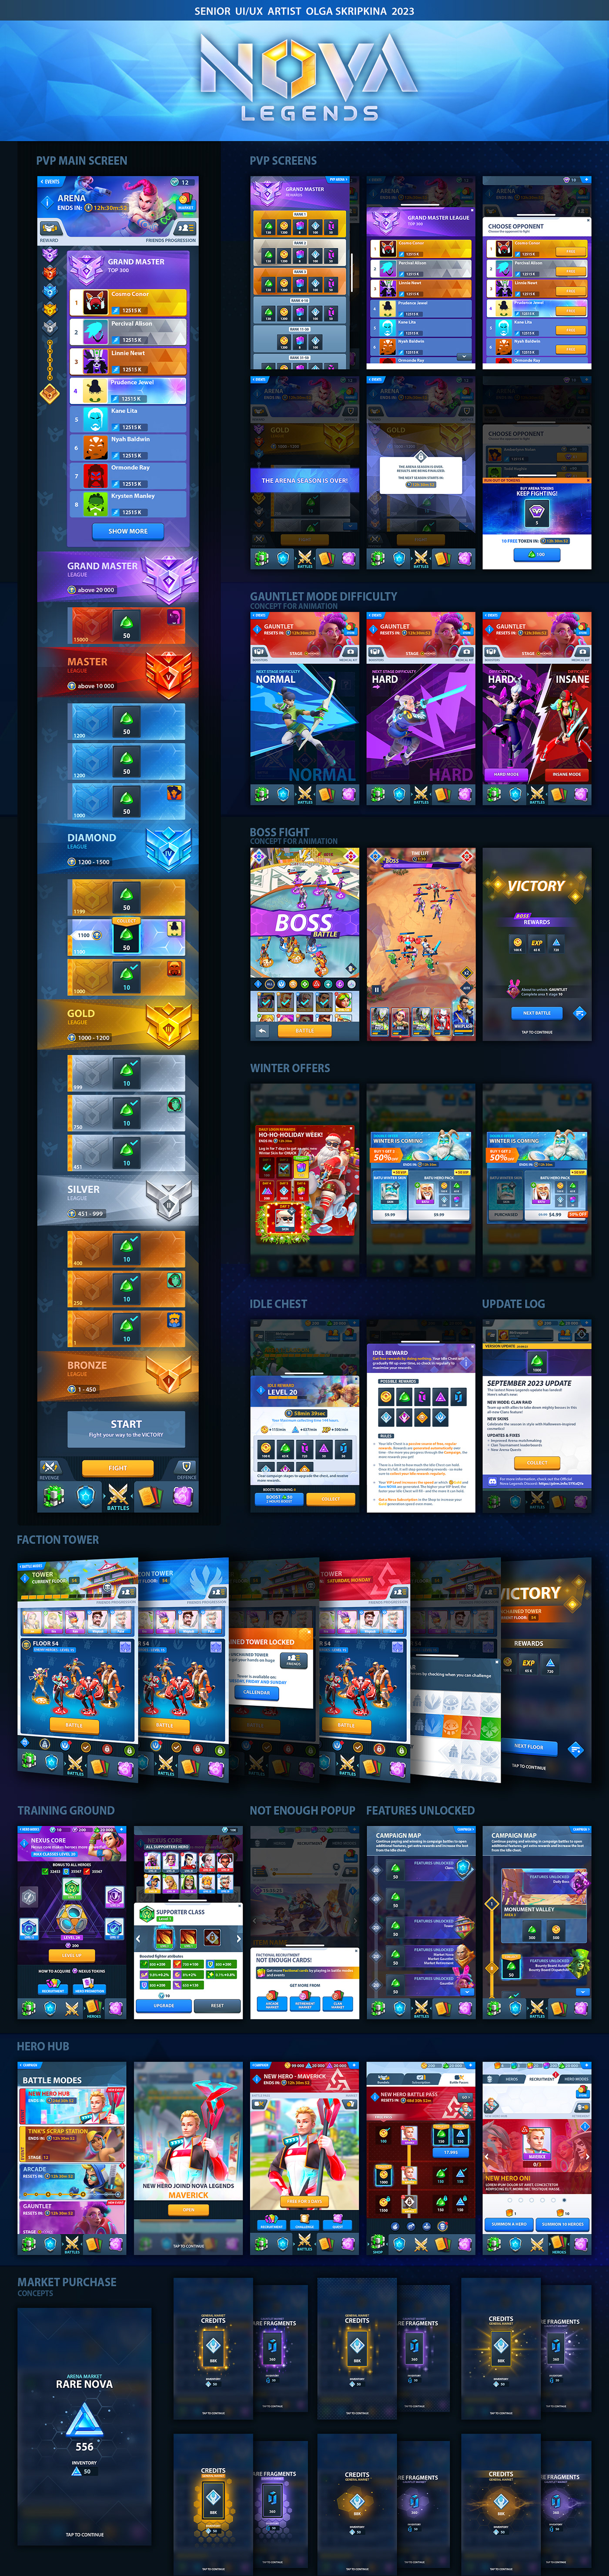 UI UI/UX game ui game ui design mobile game plarium user interface Nova Legends